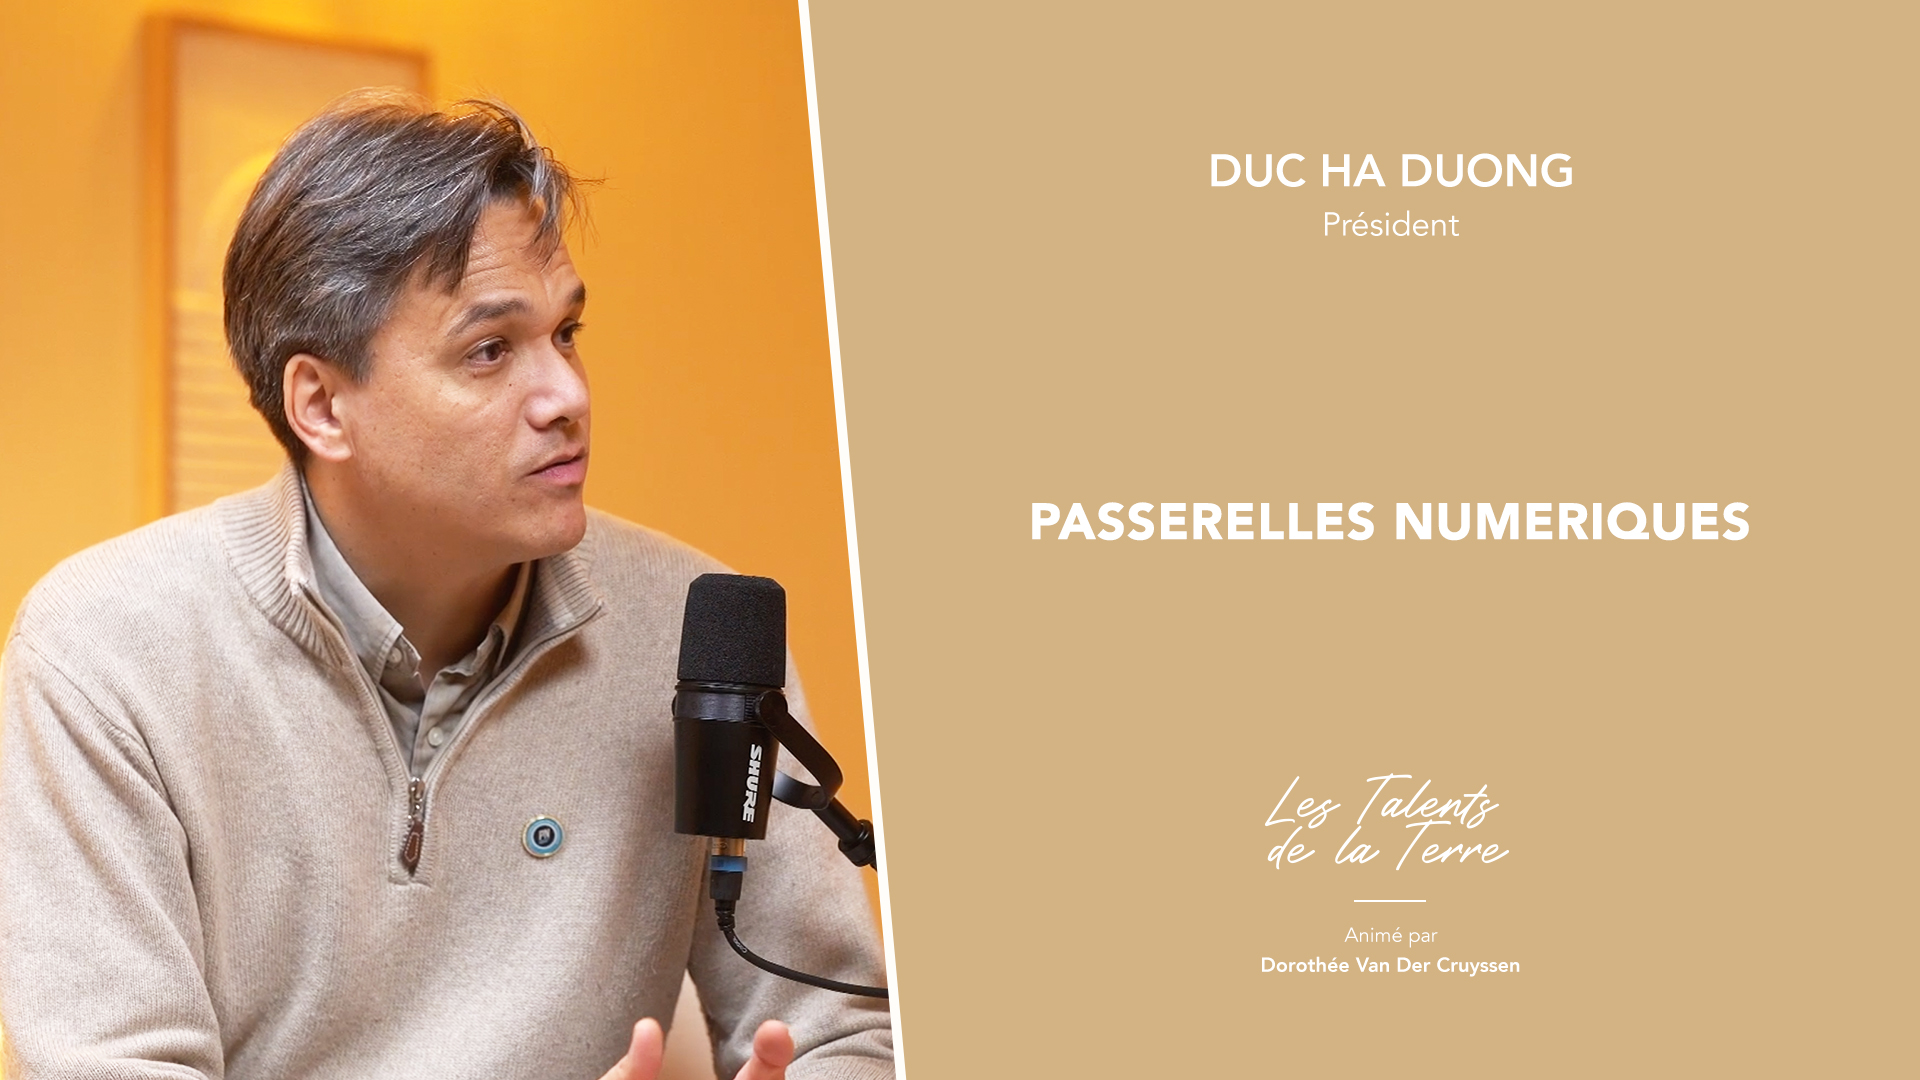 Talents de la terre : Rencontre avec Duc Ha Duong – Président de Passerelles Numériques